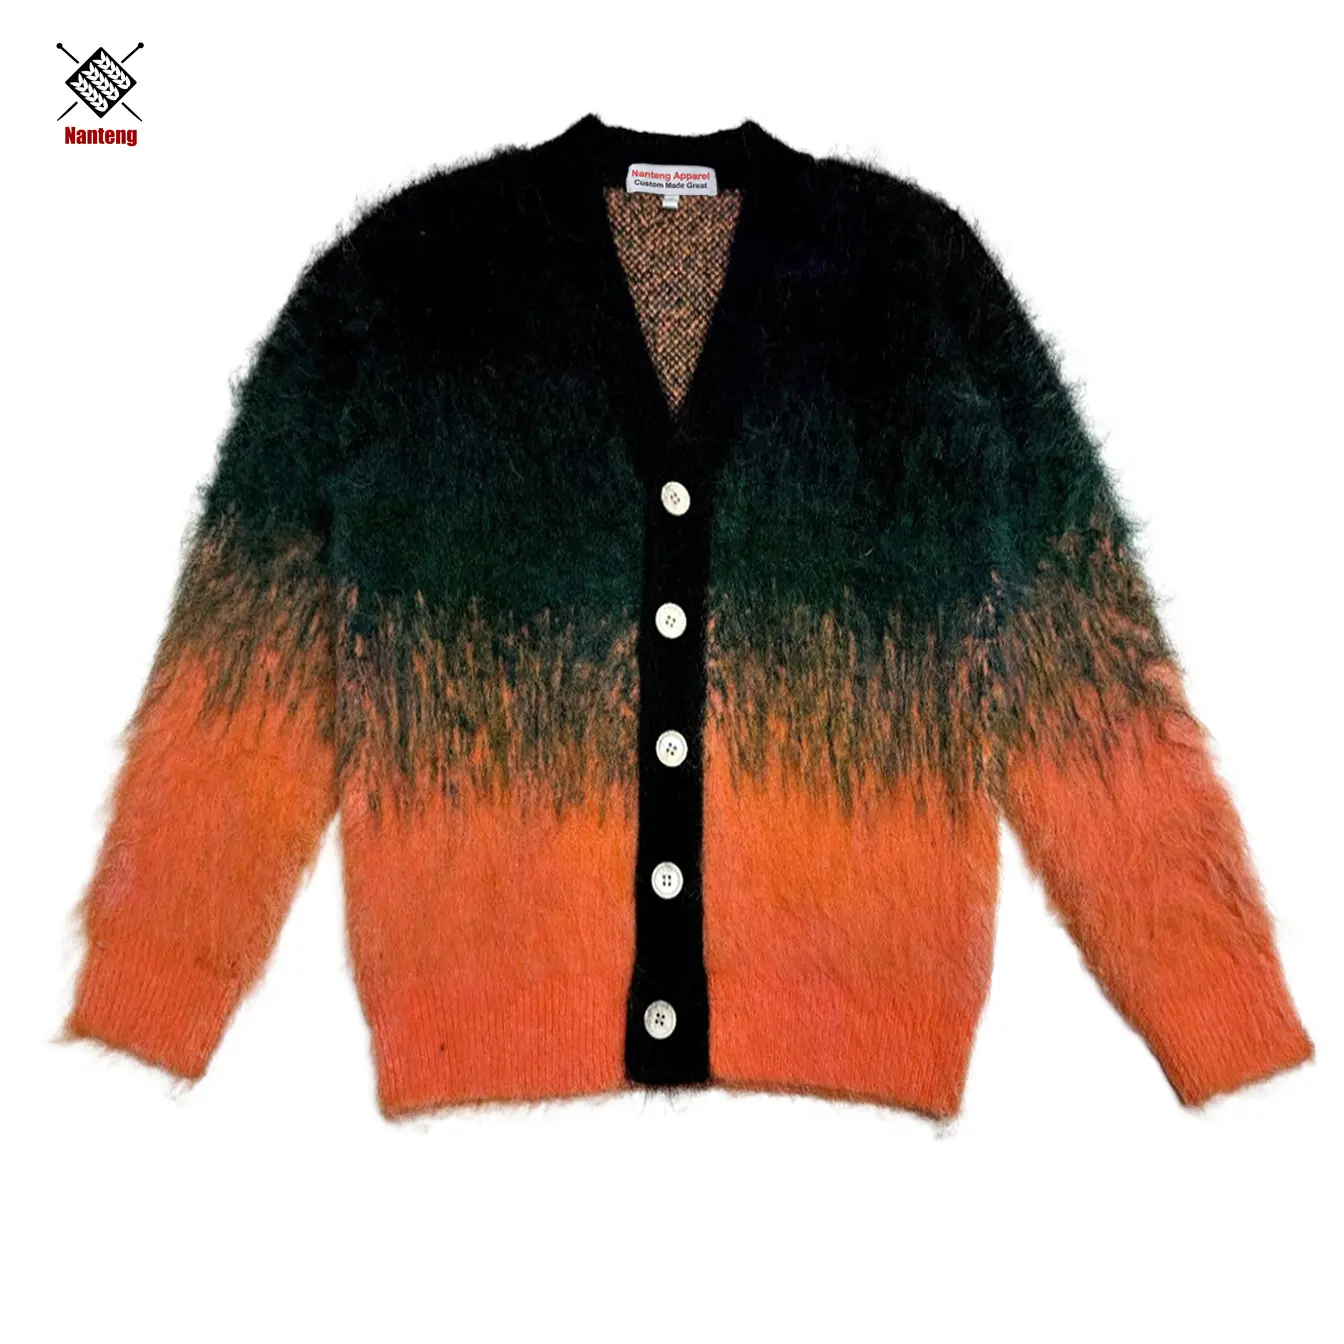 Oem Light Luxus Hochwertige neue Produkte Bestseller Cardigan Hot Sale für Mohair Sweater Men